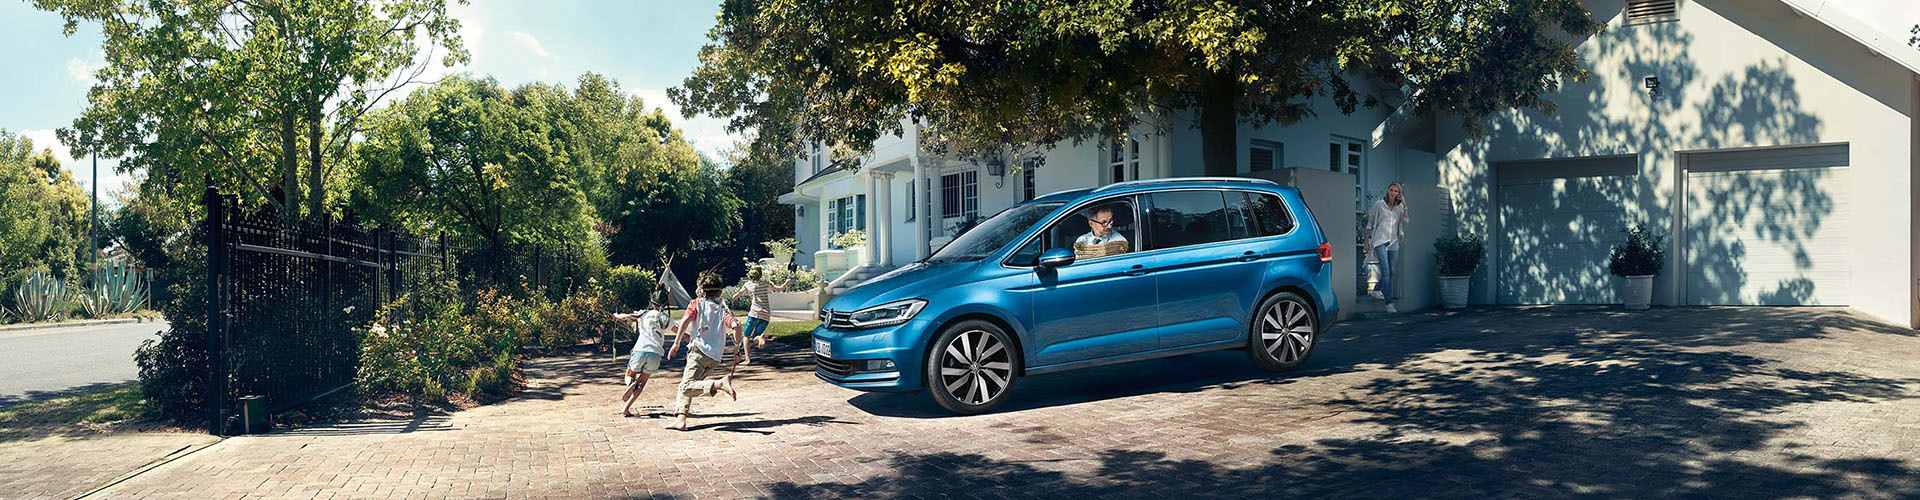 Volkswagen Touran un blau vor Familienhaus